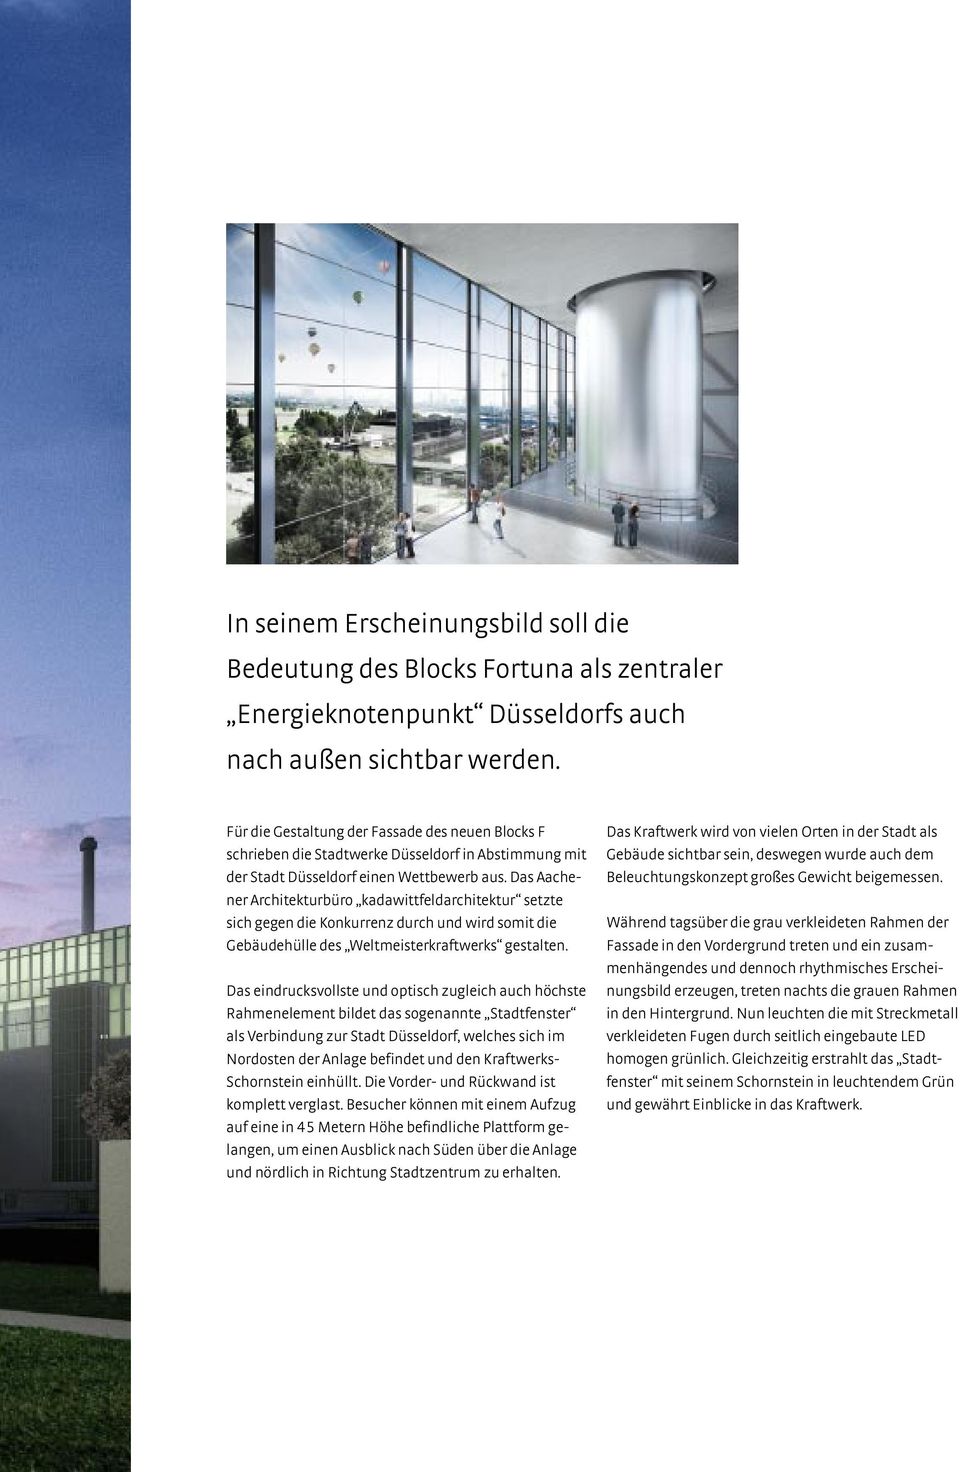 Das Aachener Architekturbüro kadawittfeldarchitektur setzte sich gegen die Konkurrenz durch und wird somit die Gebäudehülle des Weltmeisterkraftwerks gestalten.